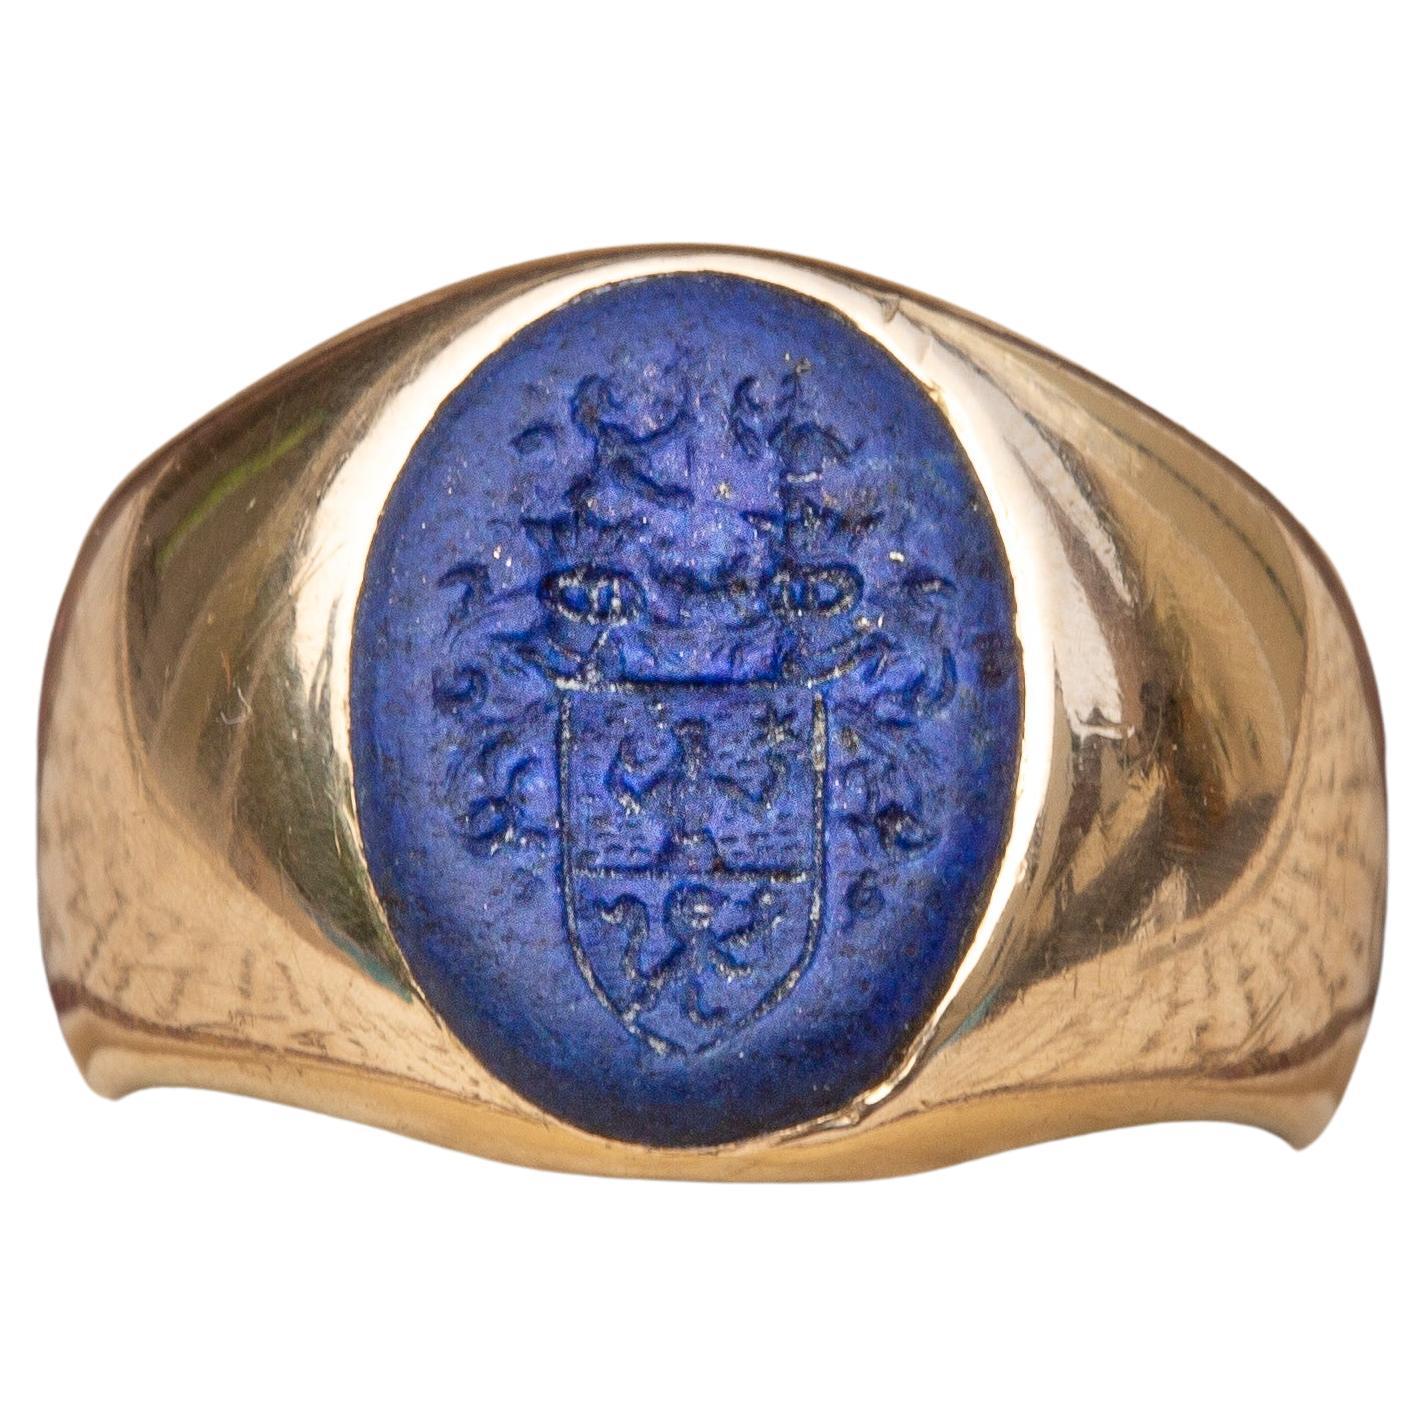 Antique Nobility 'Ritter Von Tabora' Coat of Arms Lapis Lazuli Intaglio Signet